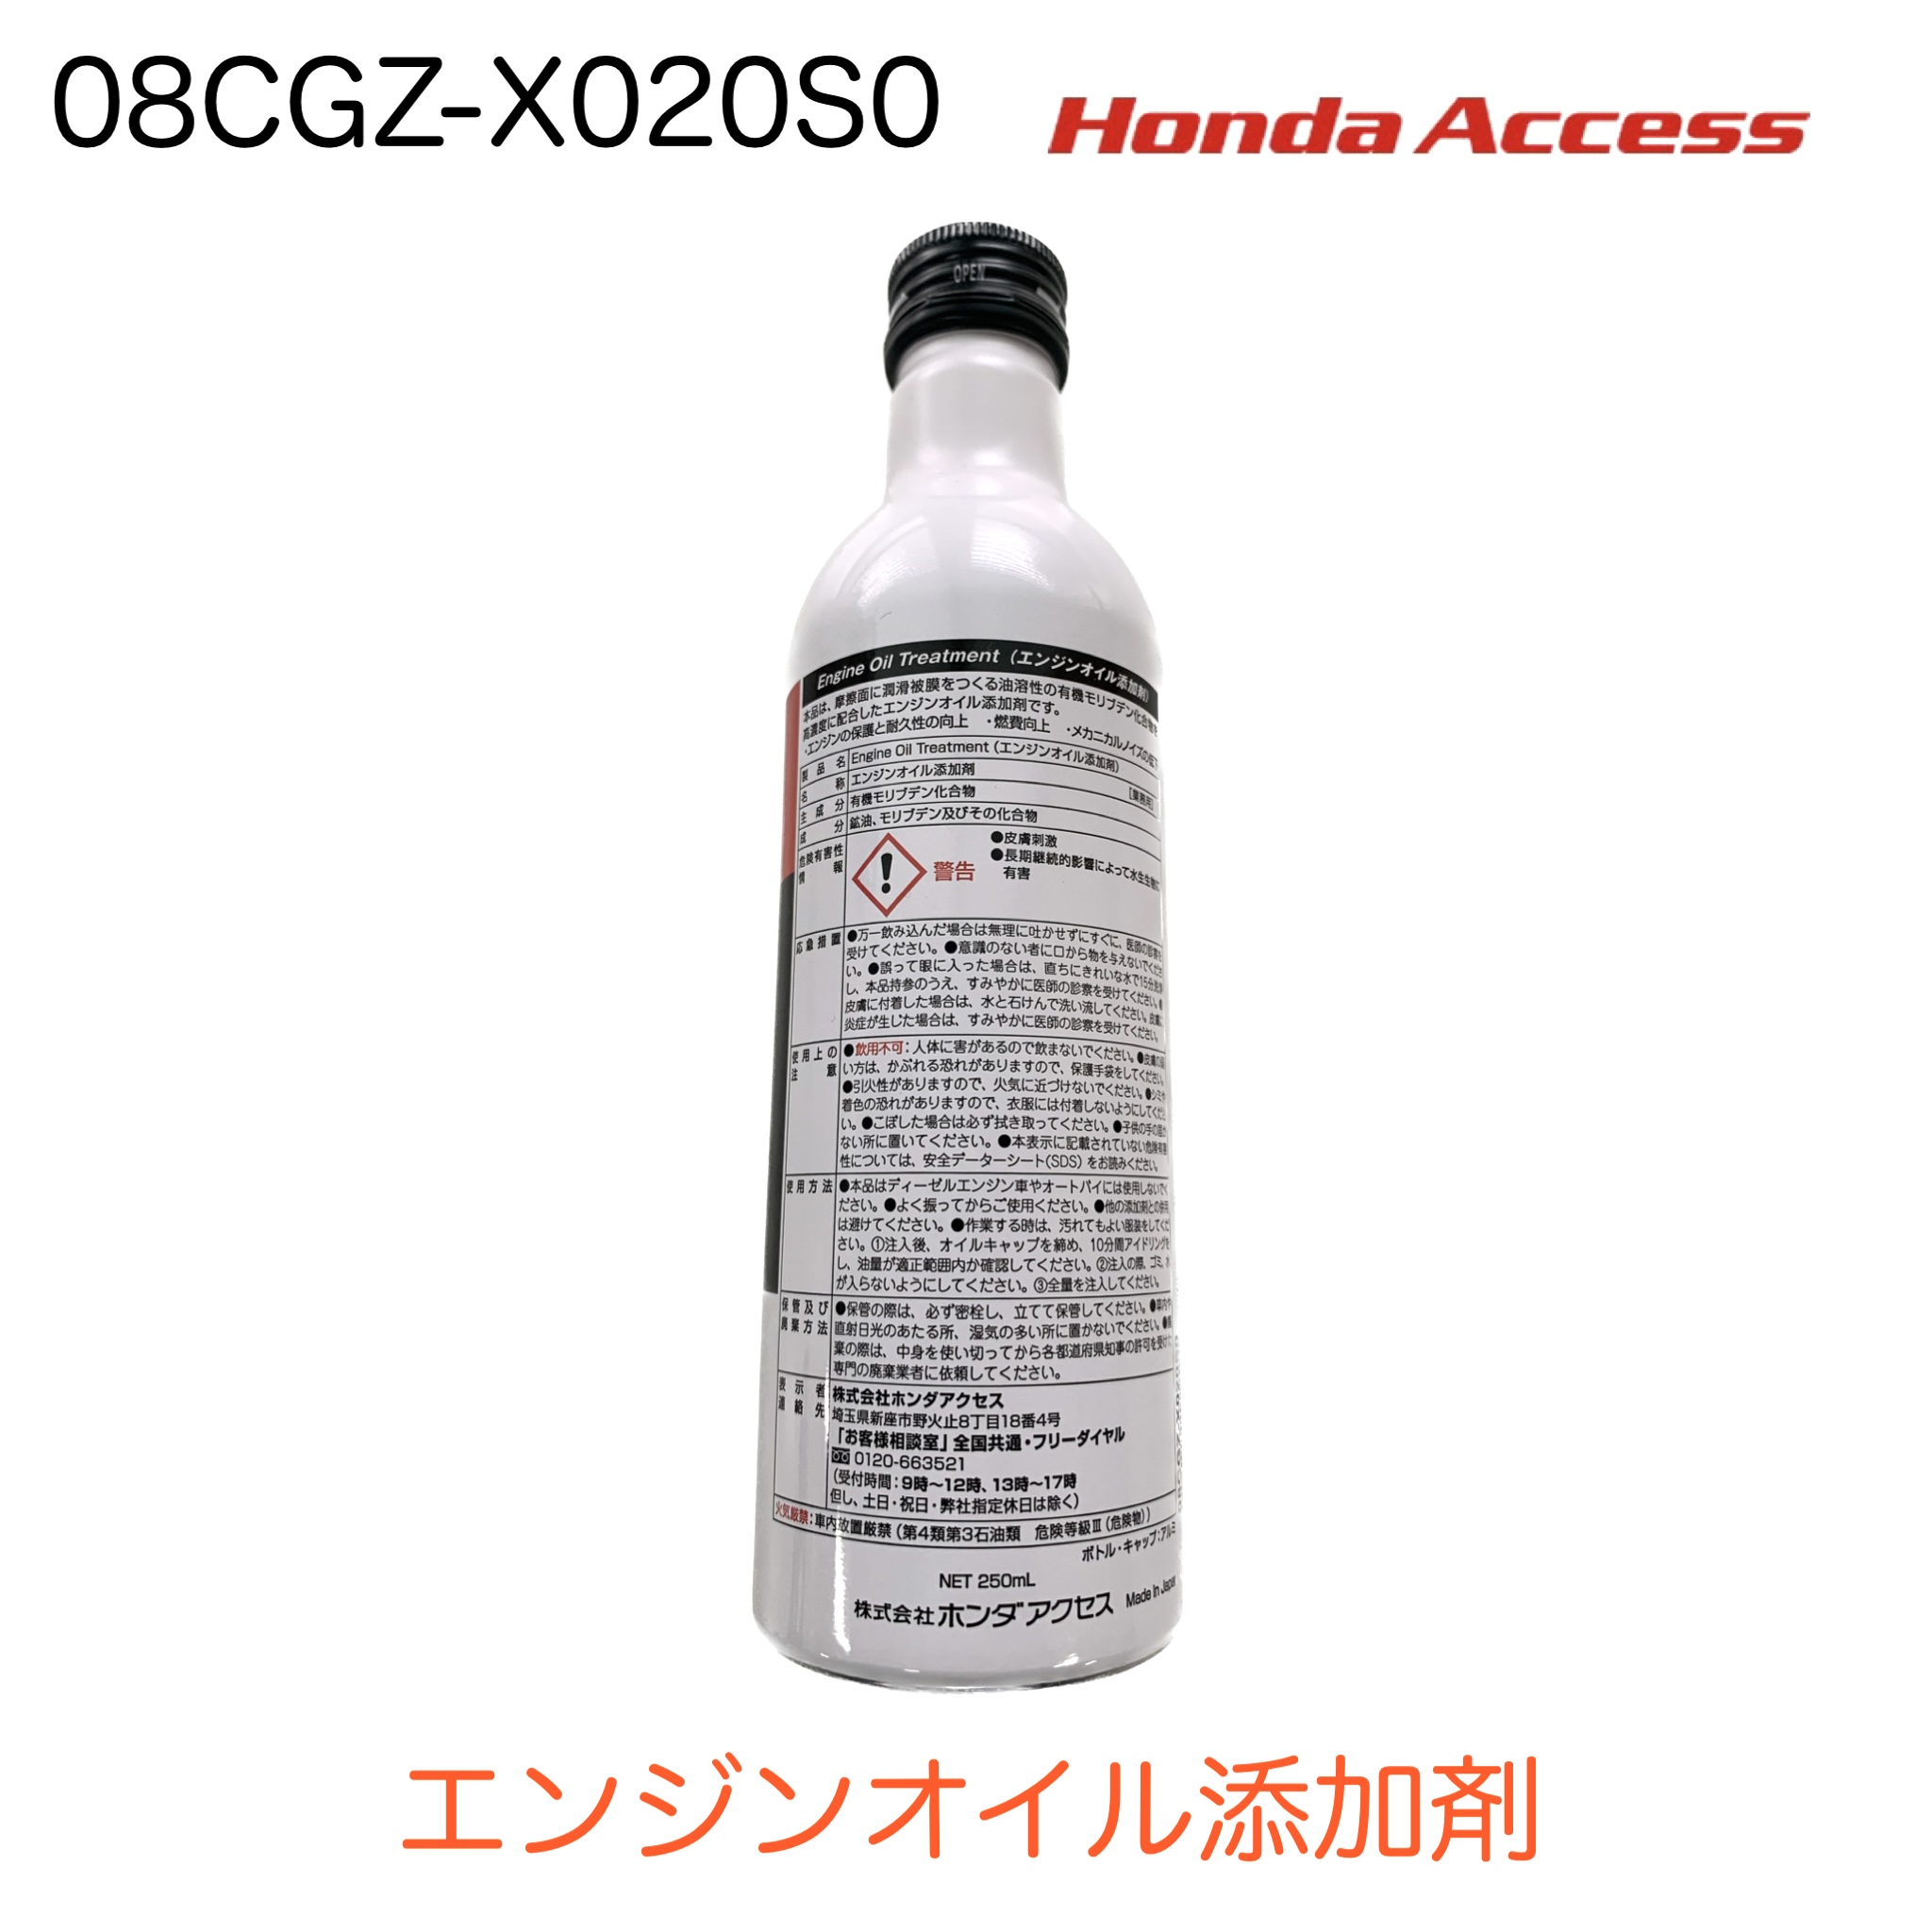 激安卸販売新品 ホンダ 純正 ホンダアクセス HondaAccess 08CGZ-X020S0 エンジンオイル添加剤 エンジン保護と耐久性向上  燃費向上メカニカルノイズ低下